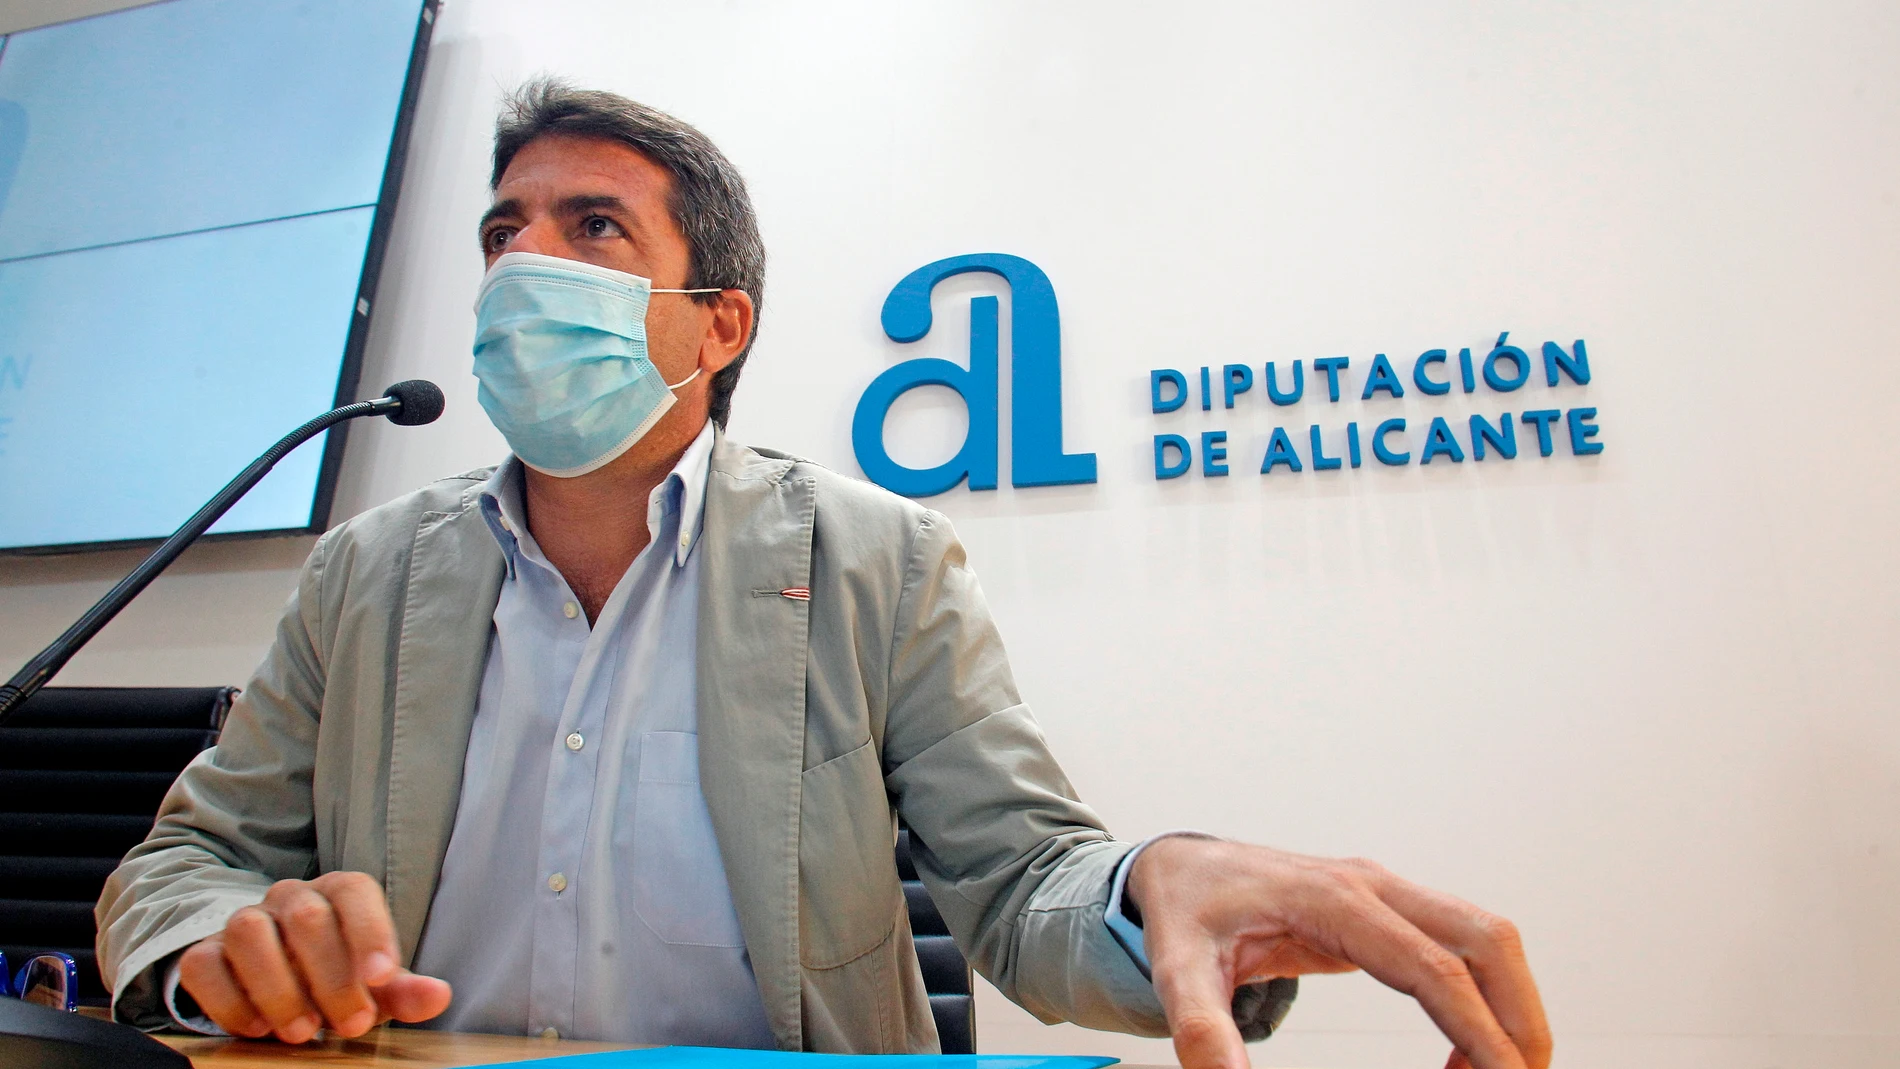 El presidente de la Diputación de Alicante, Carlos Mazón, anuncia en rueda de prensa los cambios que llevará a cabo en el equipo de gobierno de la institución.